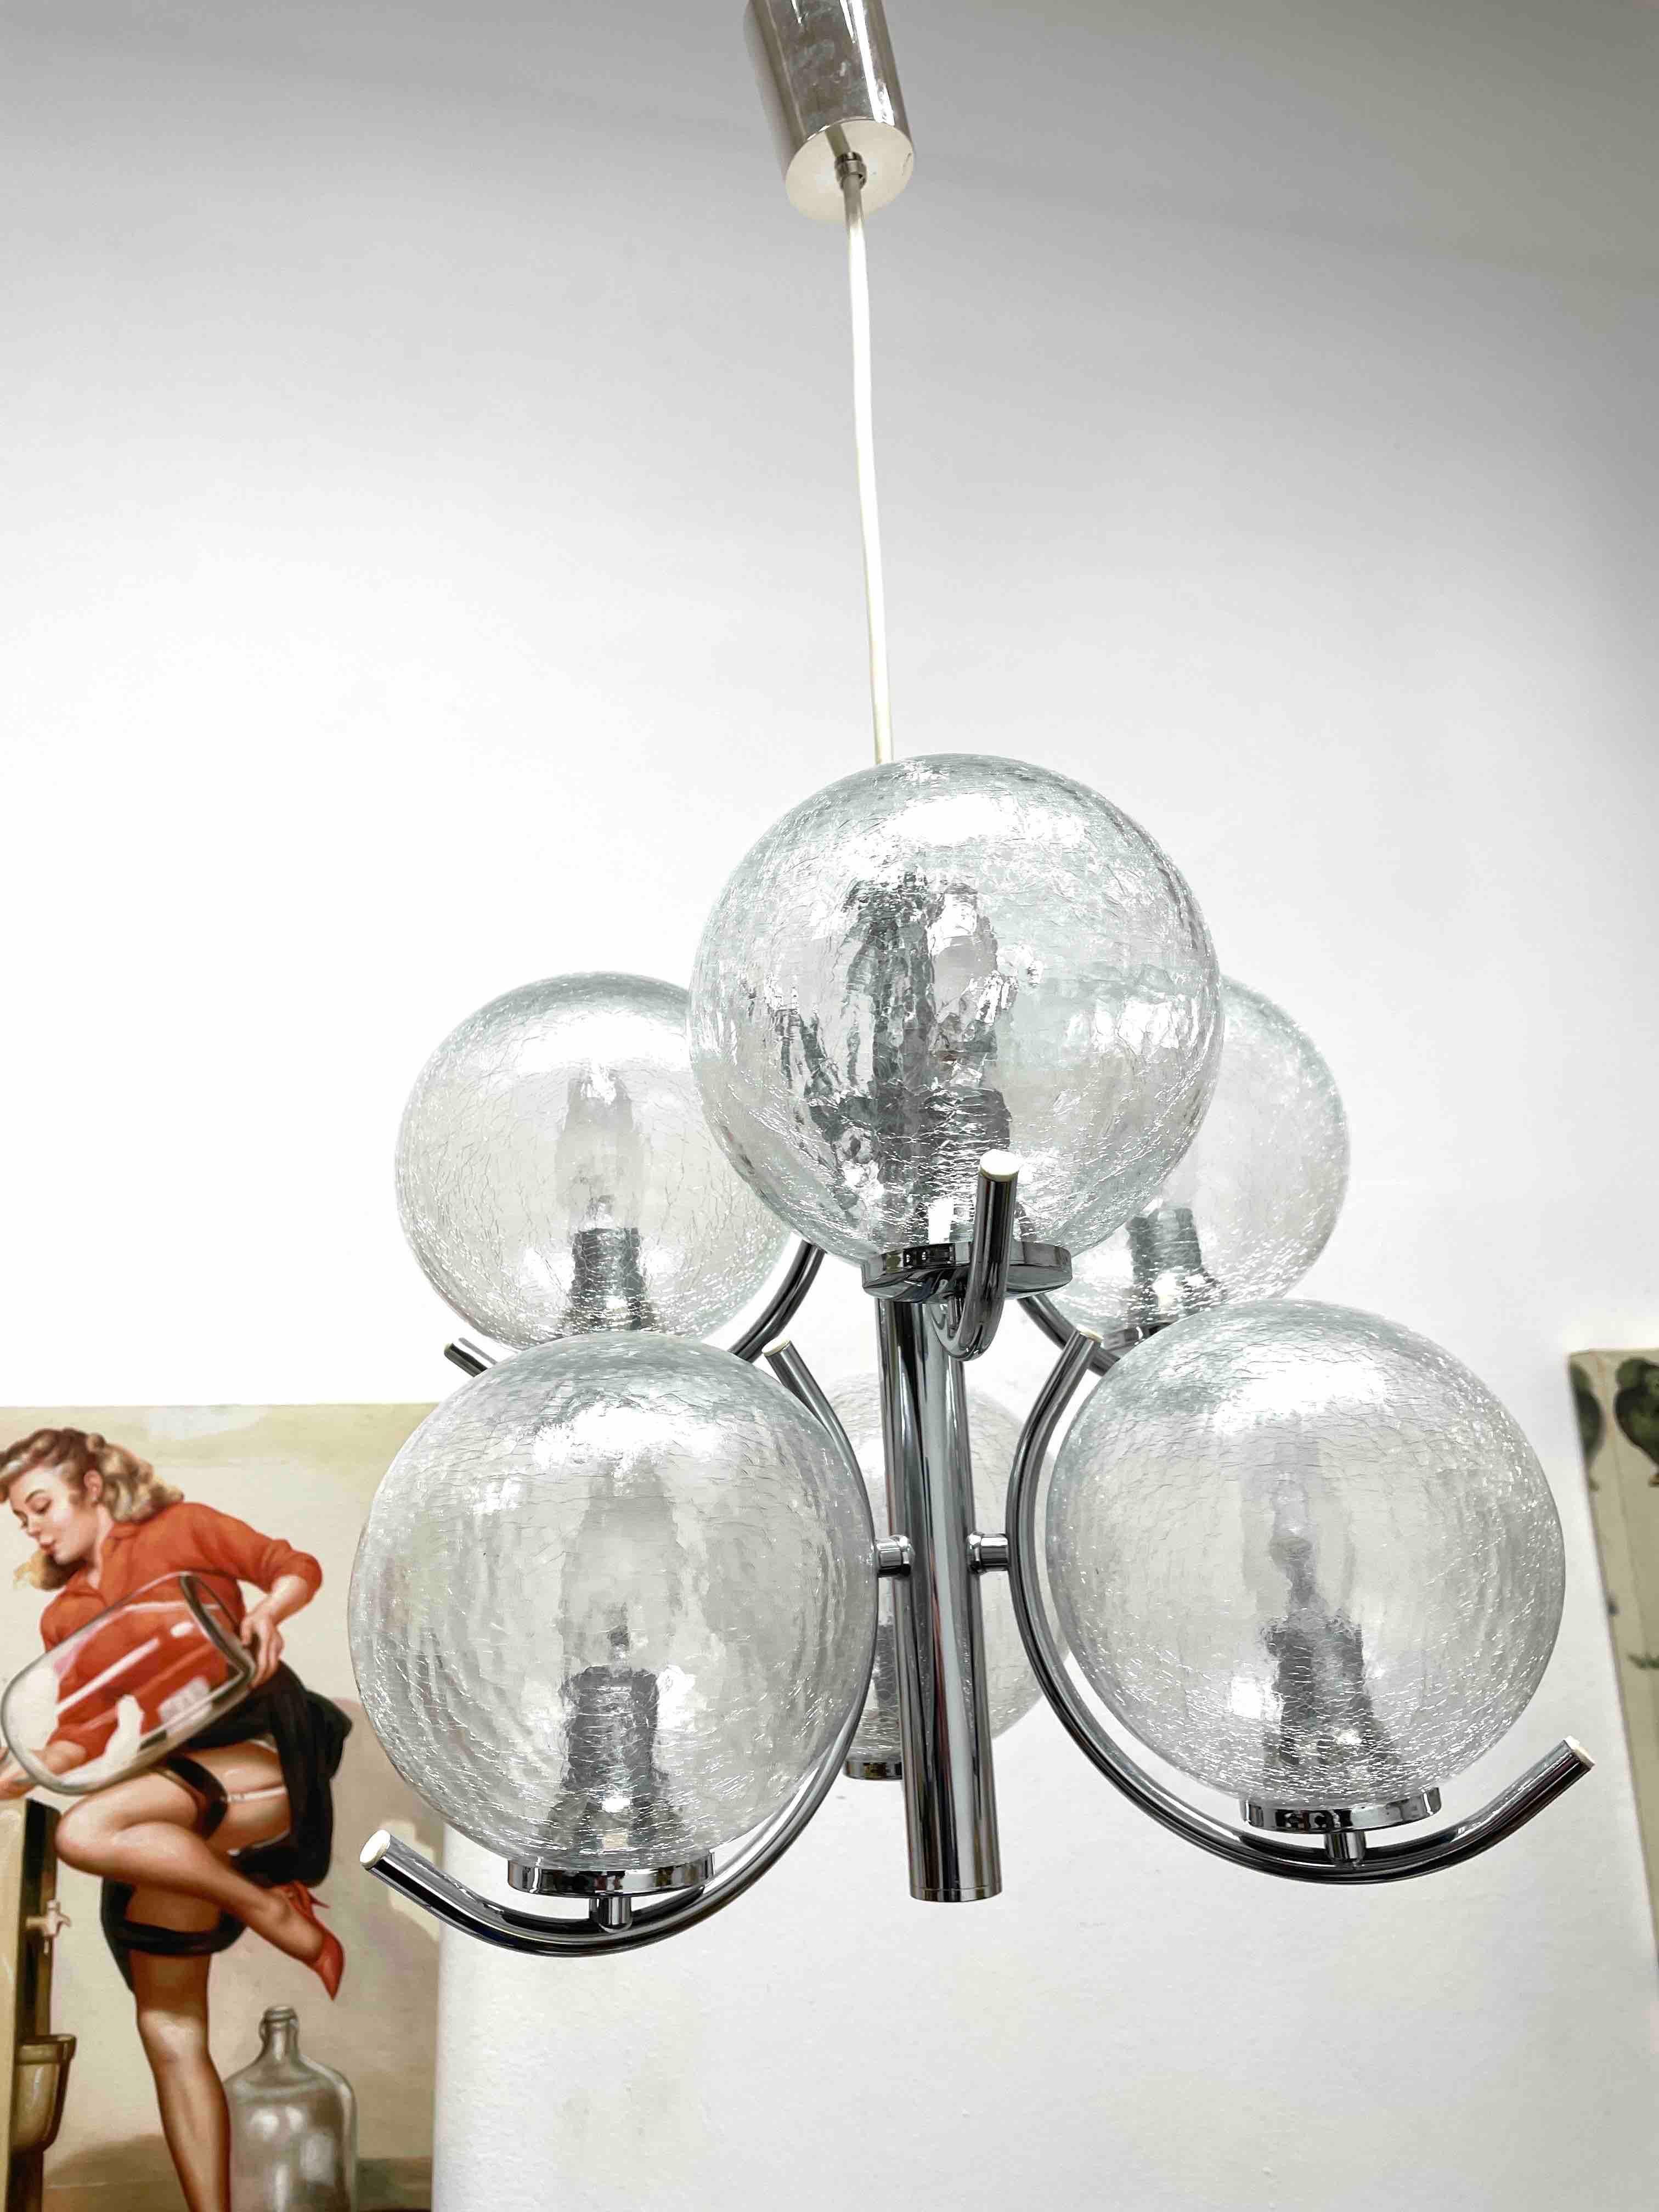 Un lustre Richard Essig fabriqué en Allemagne dans les années 1960. Il est fascinant avec son design de l'ère spatiale et ses six boules transparentes. Le corps de la lampe est entièrement en métal, y compris les bras.
Le lustre nécessite 6